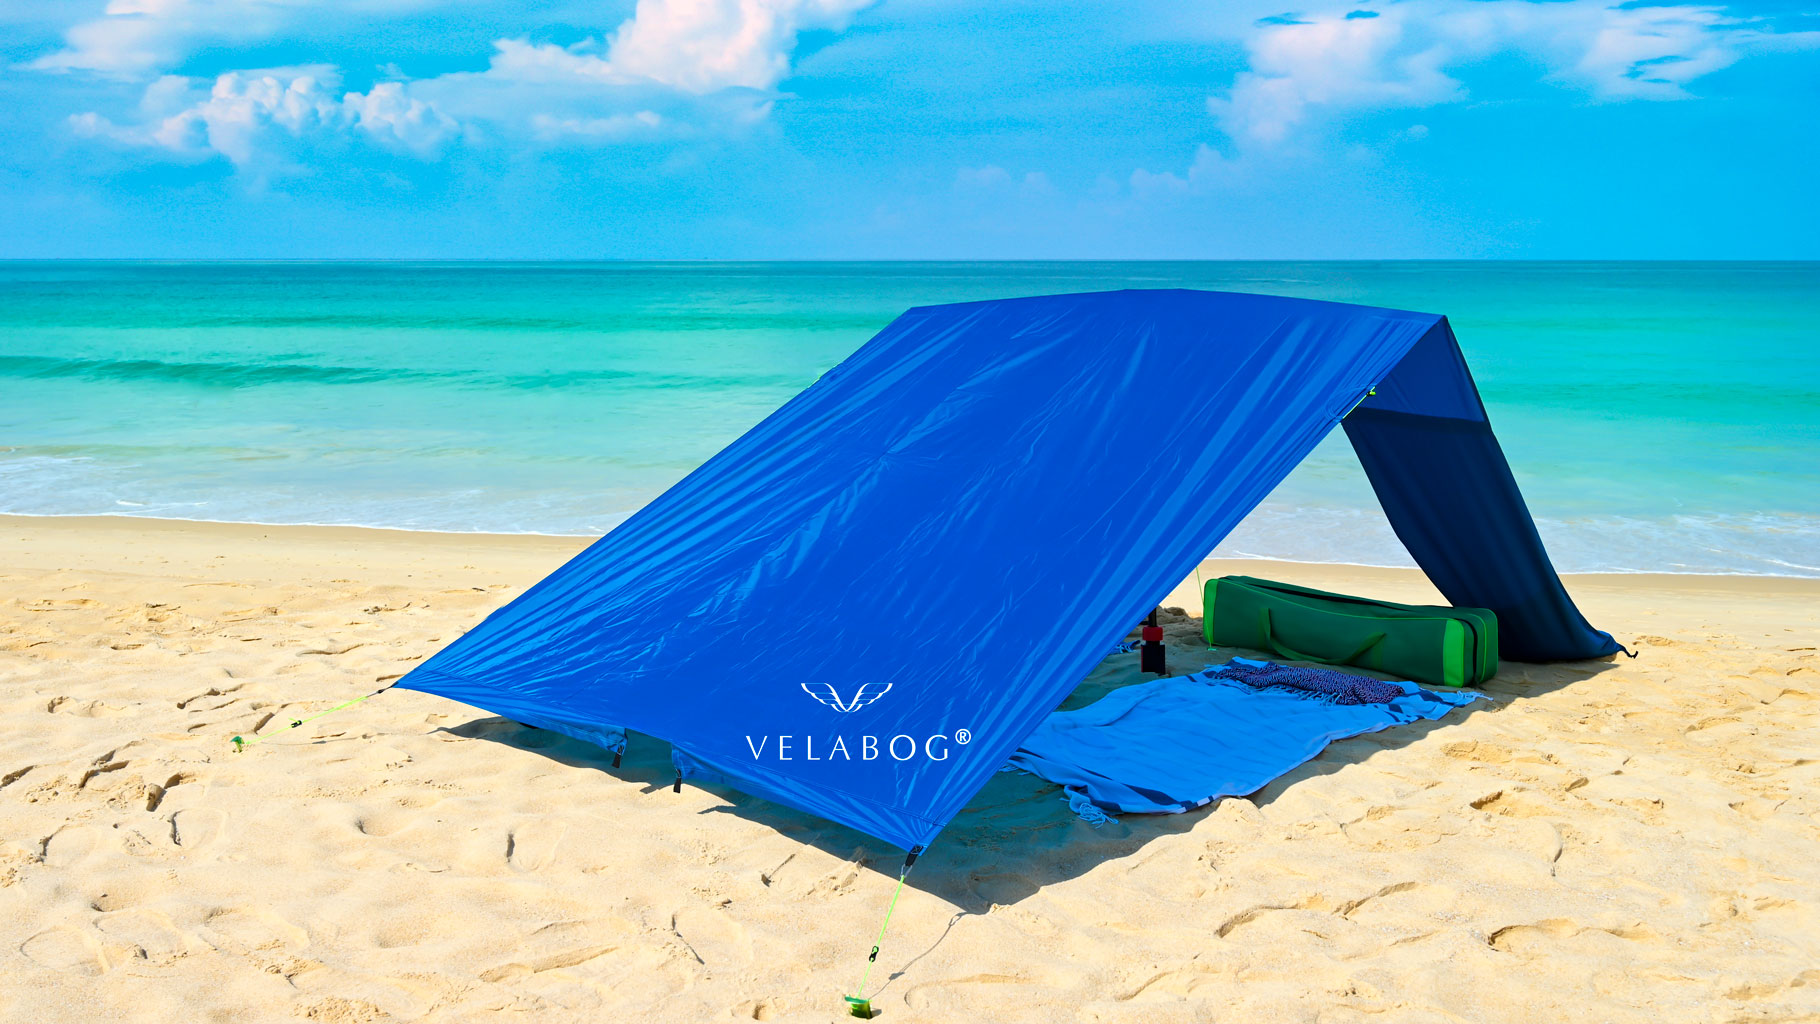 Vela da sole tenda spiaggia Velabog Breeze, blu, sulla spiaggia senza vento. Vela da sole, ombrellone e tenda da spiaggia in uno. Impiego anche senza vento. Nessun accumulo di calore. Molto ampia e robusta. Miglior tettoia da spiaggia. Vista dal retro.